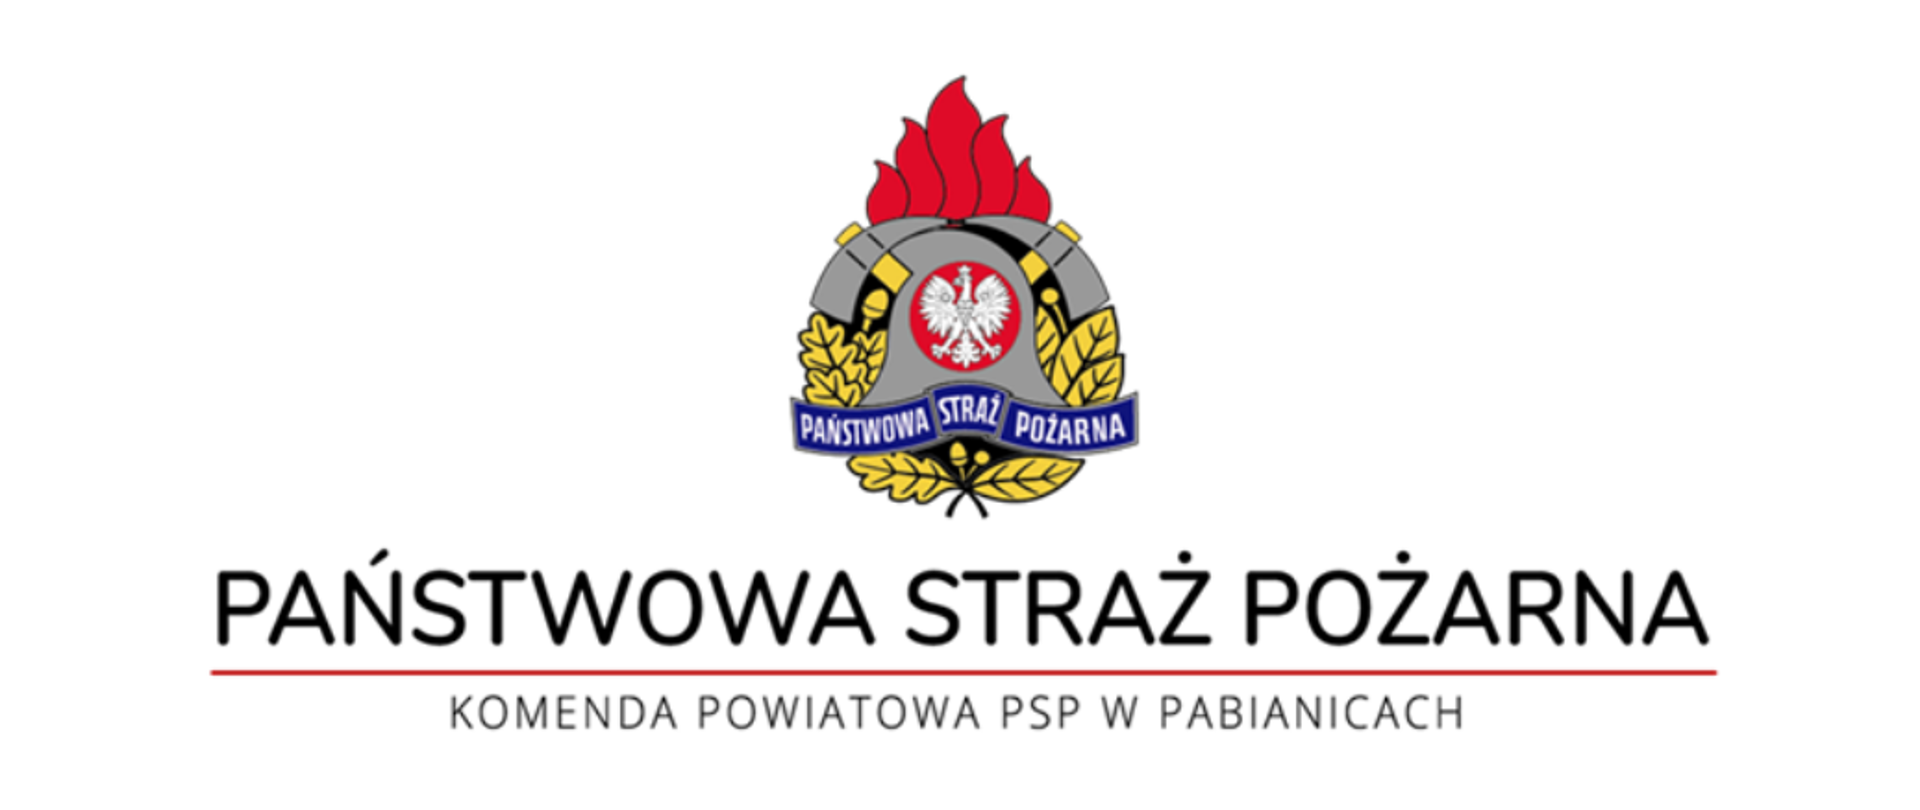 U góry centralnie logo Państwowej Straży Pożarnej w wersji kolorowej. Poniżej czarny napis Państwowa Straż Pożarna, niżej bordowa kreska, a najniżej czarny napis Komenda Powiatowa PSP w Pabianicach.